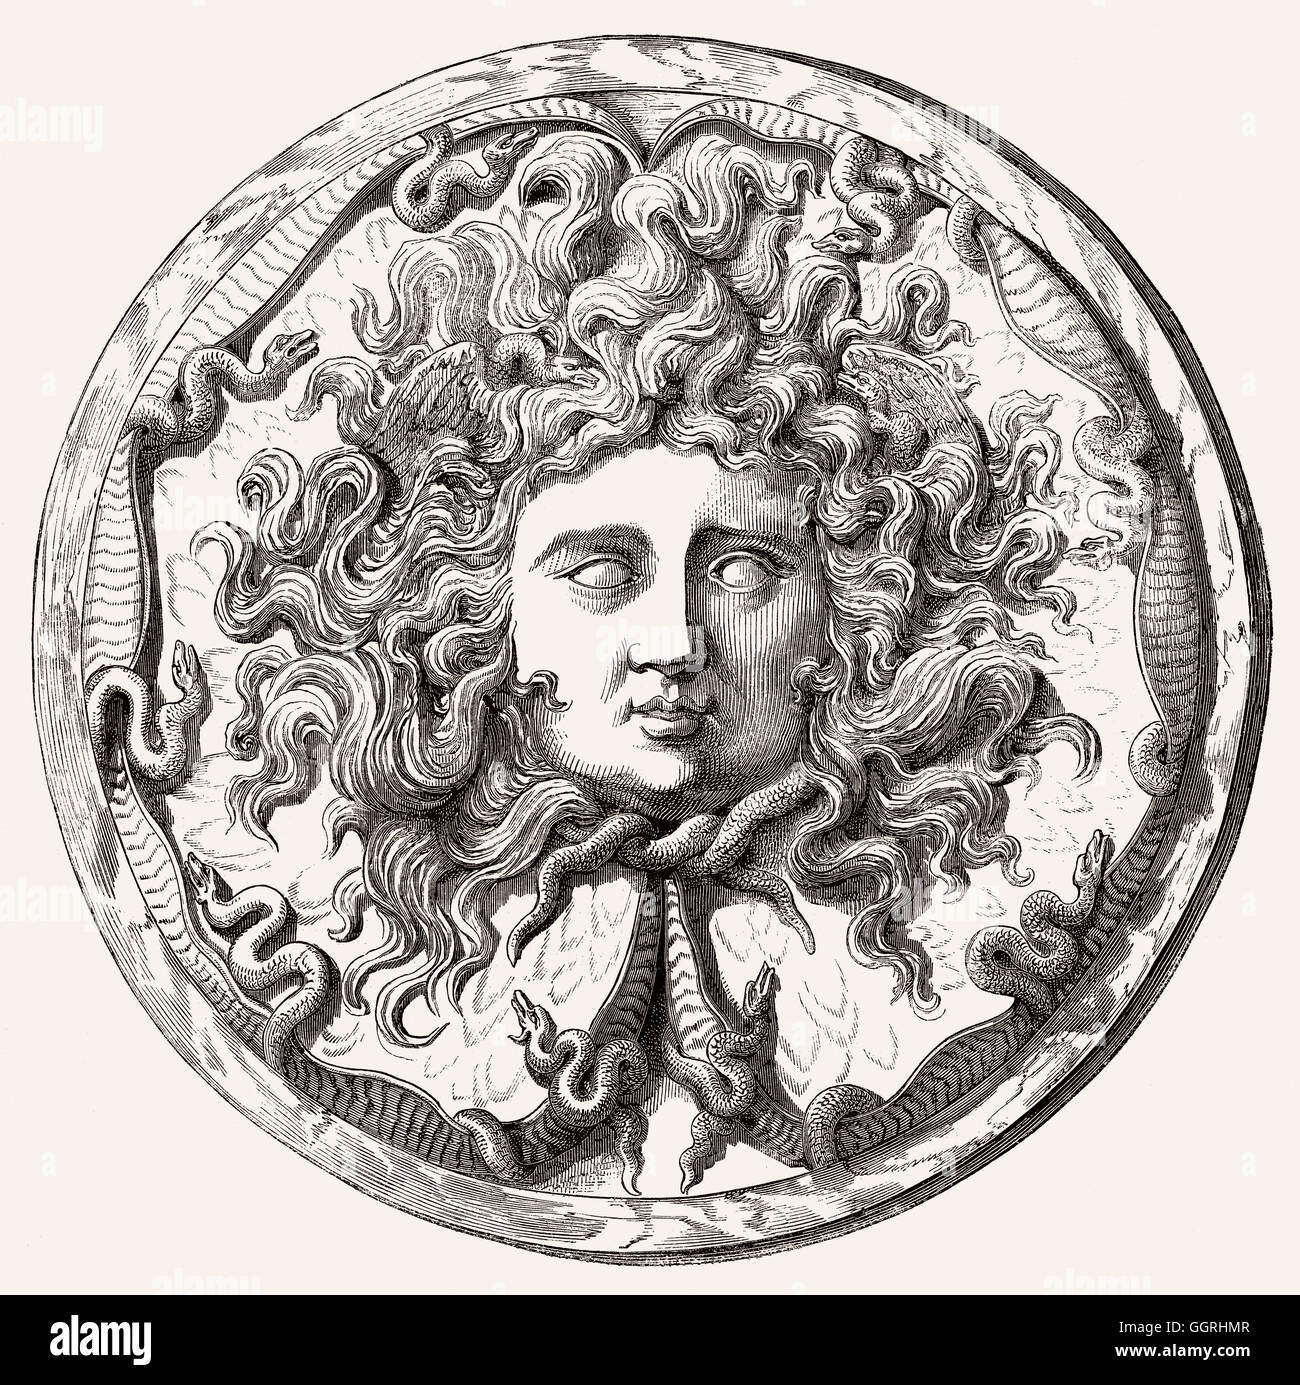 Medusa mitologia immagini e fotografie stock ad alta risoluzione - Alamy